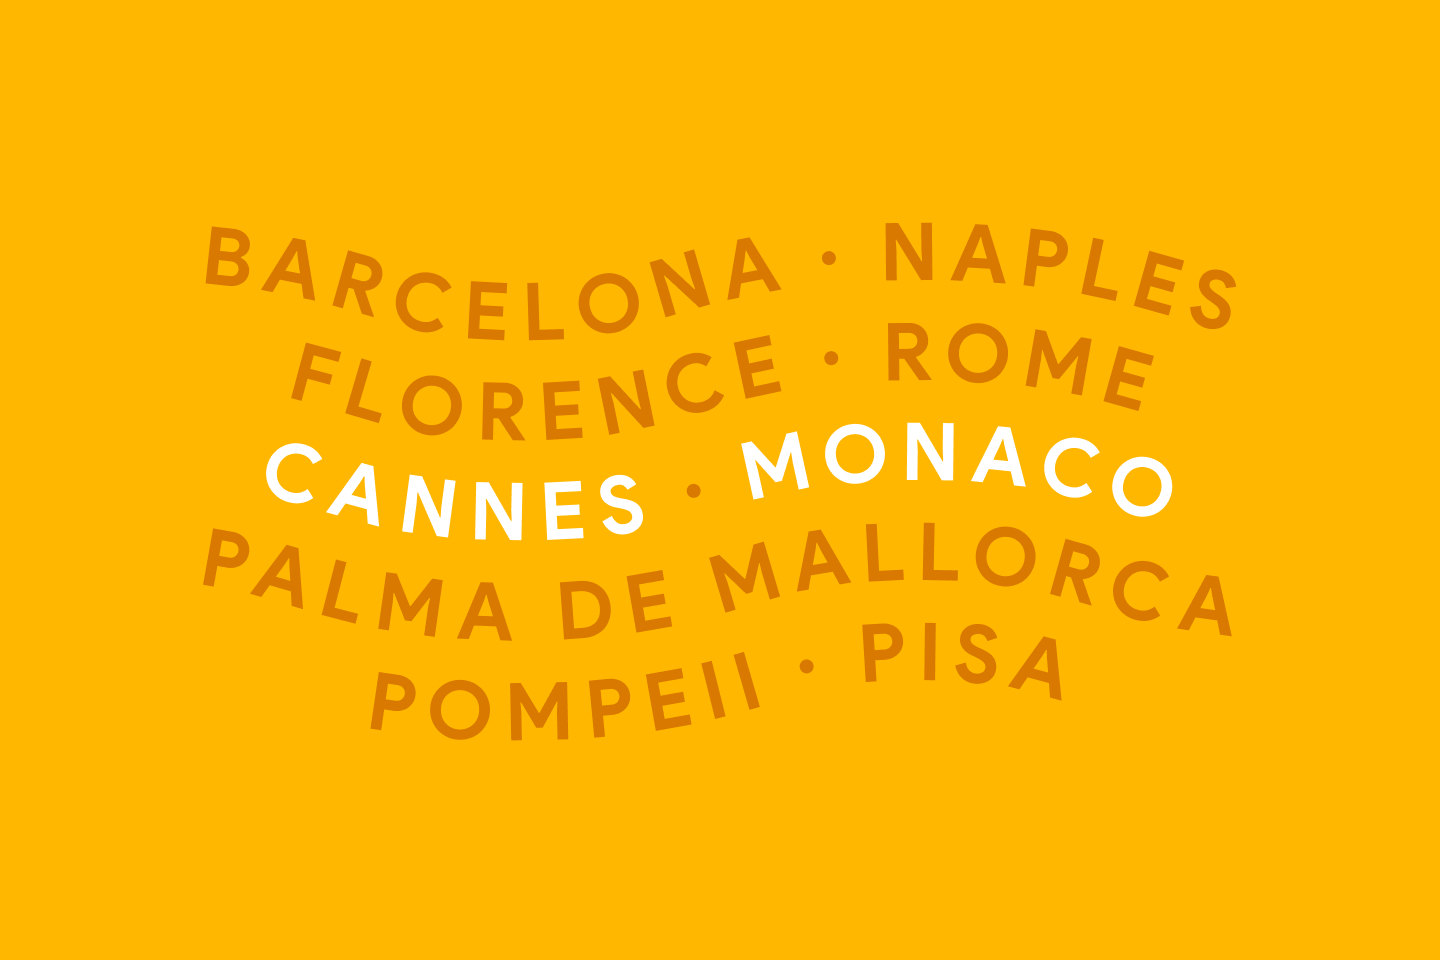 Cannes & Monaco